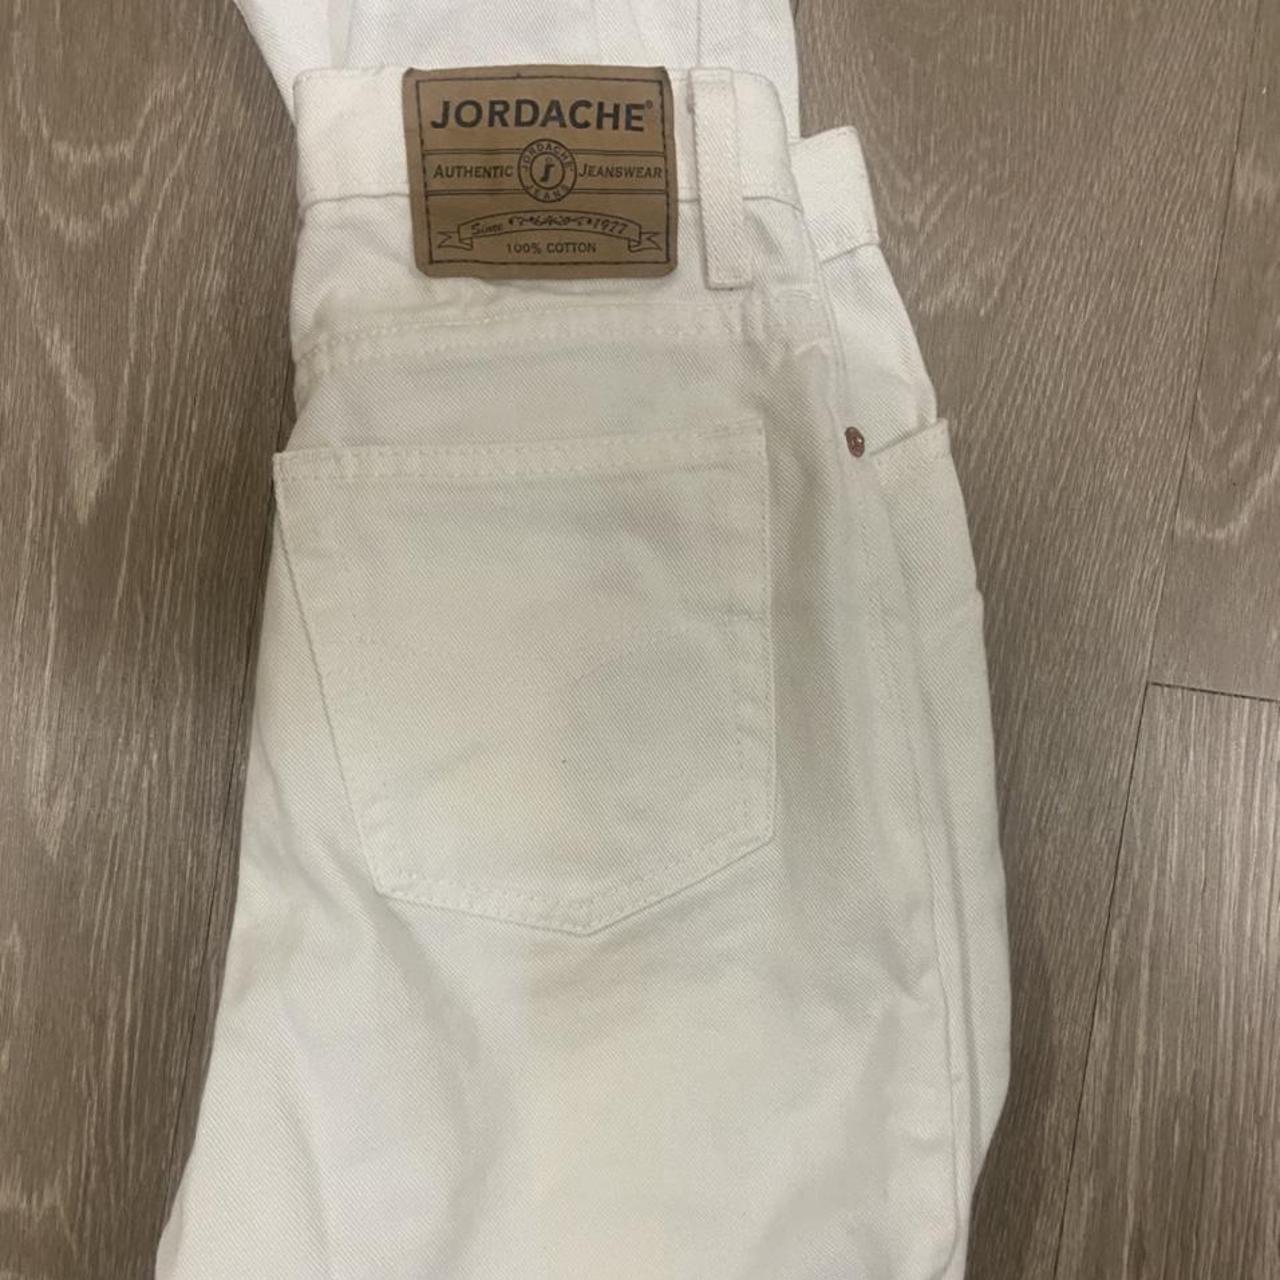 vintage 90s white jordache jeans in a size 6, best... - Depop